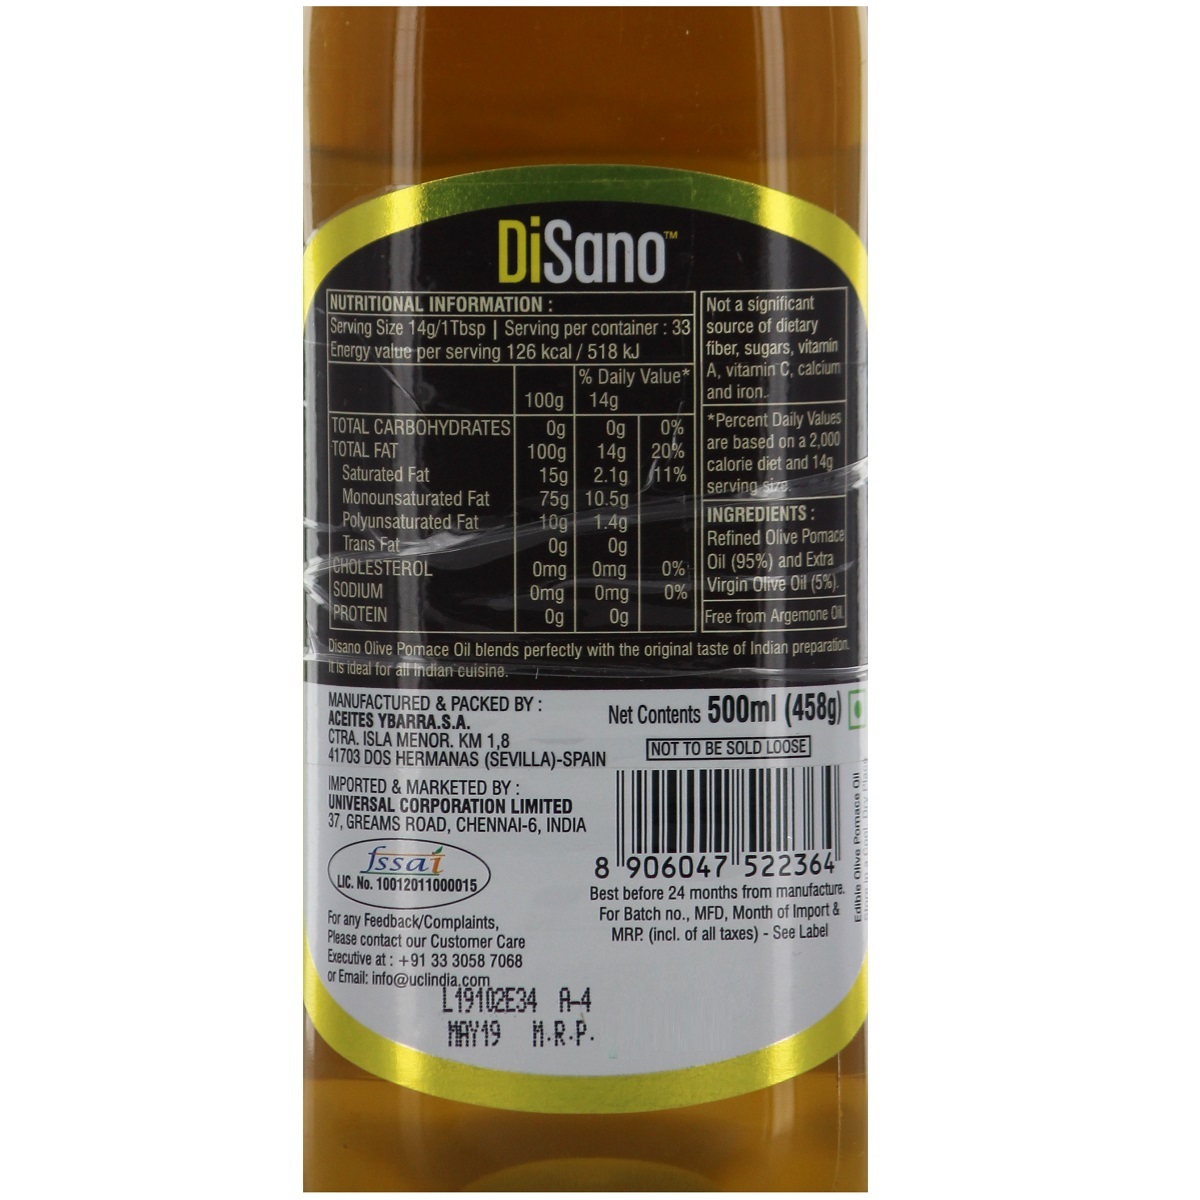 DiSano Olive Pomace Oil 500ml Buy 1 Get 1 Free